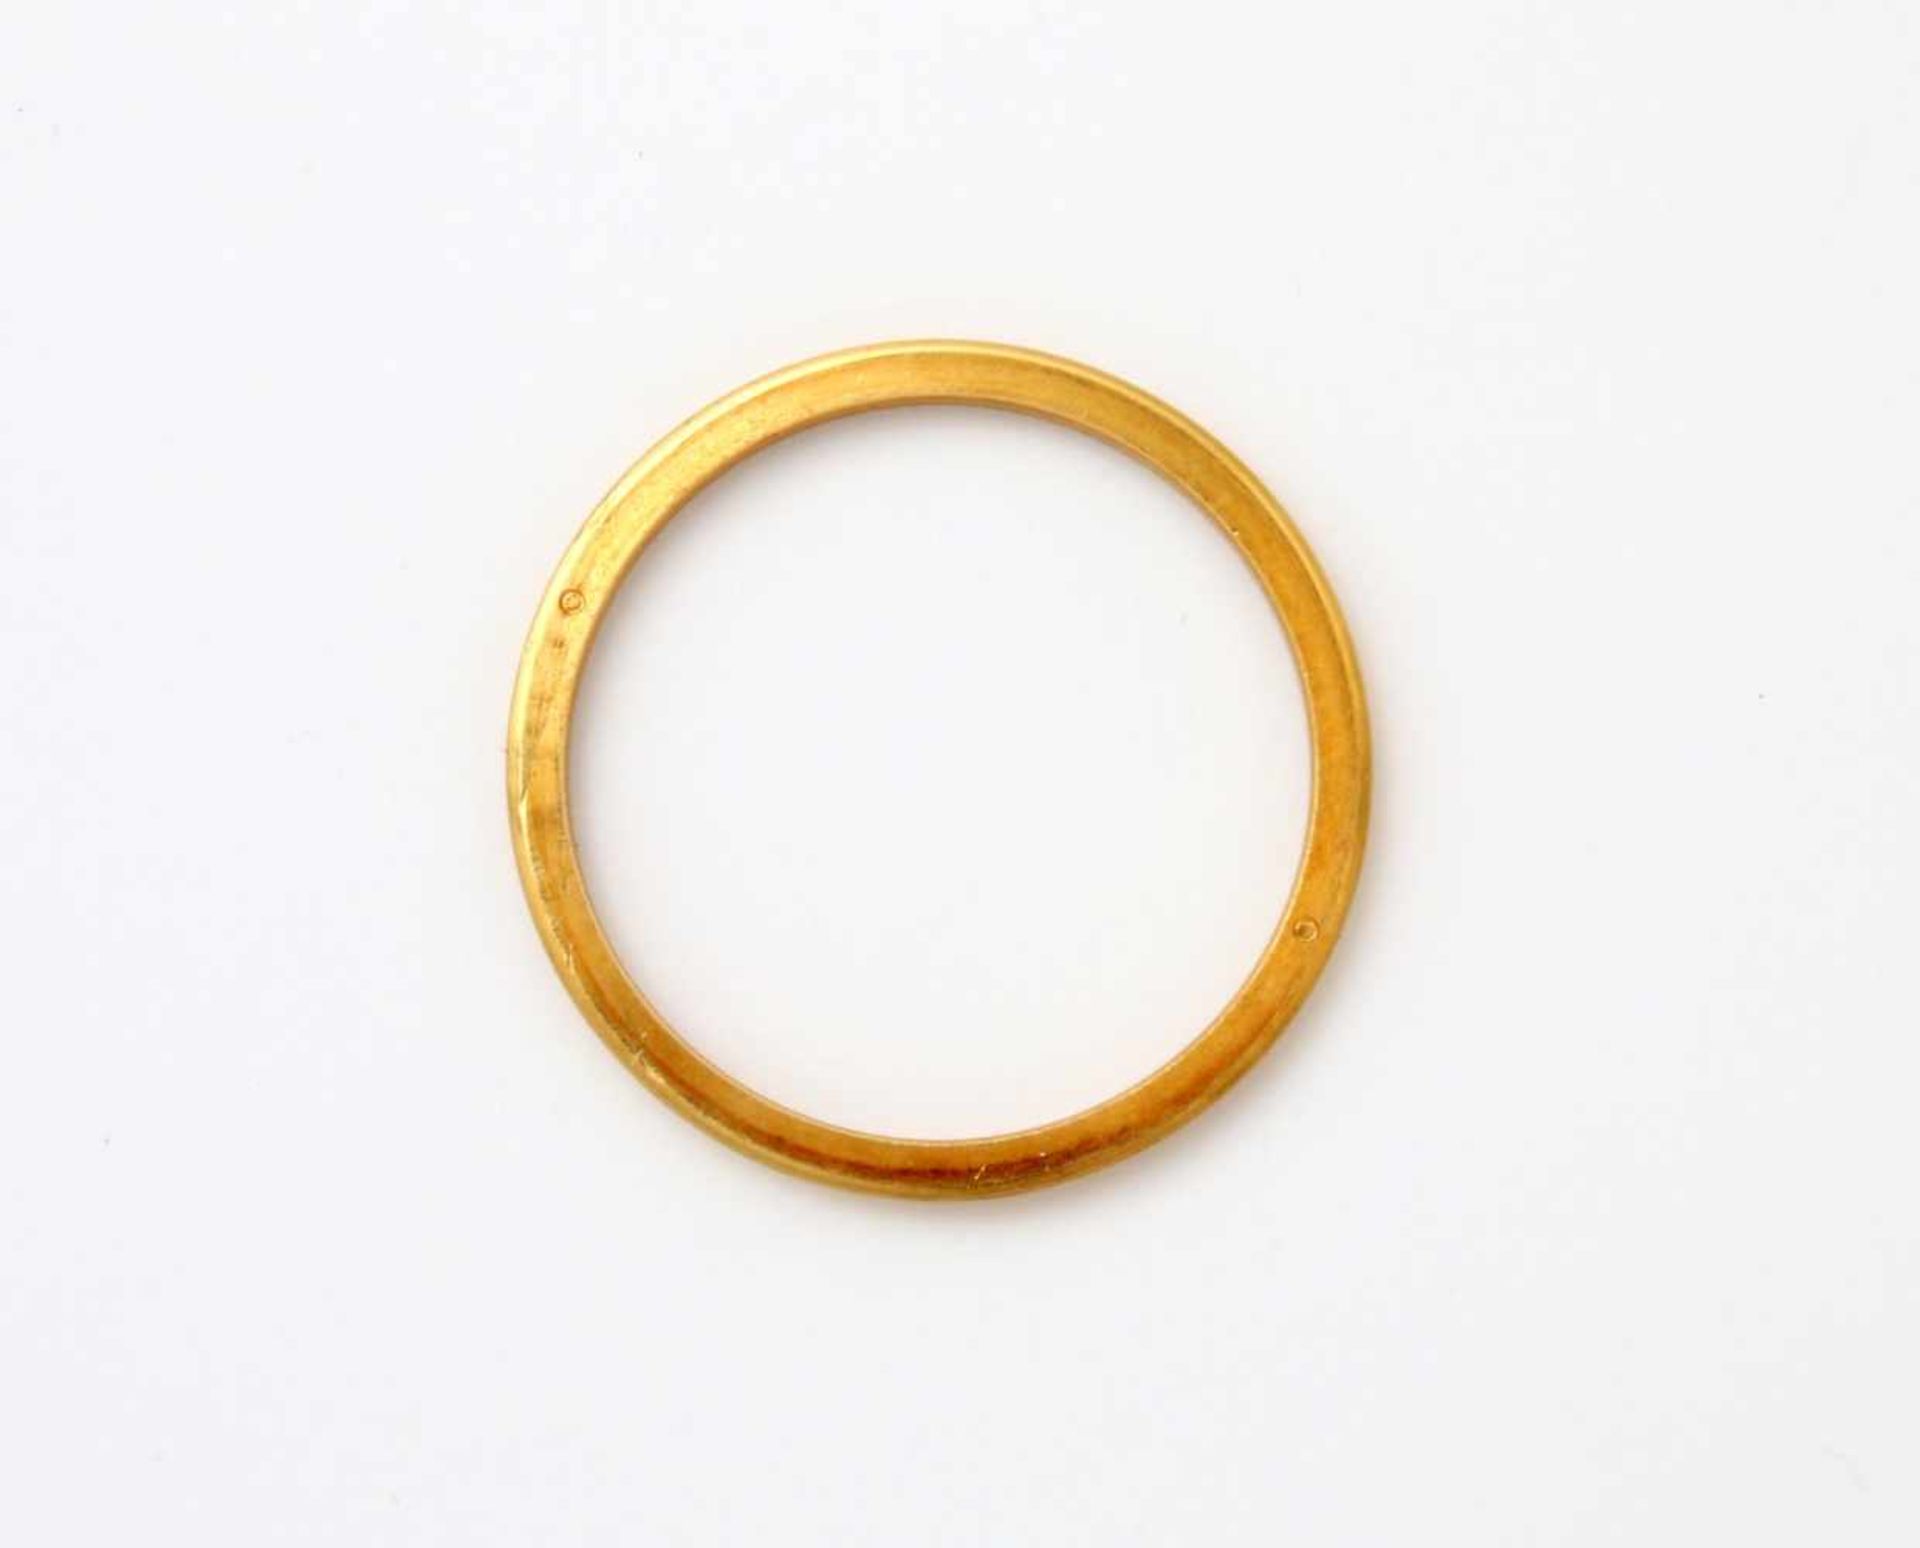 Rolex Lünette Gelbgold für Damen Ladydate GG 750, Ø 25 mm, sehr guter Zustand. Gewicht: 2,5 g. - Image 3 of 3